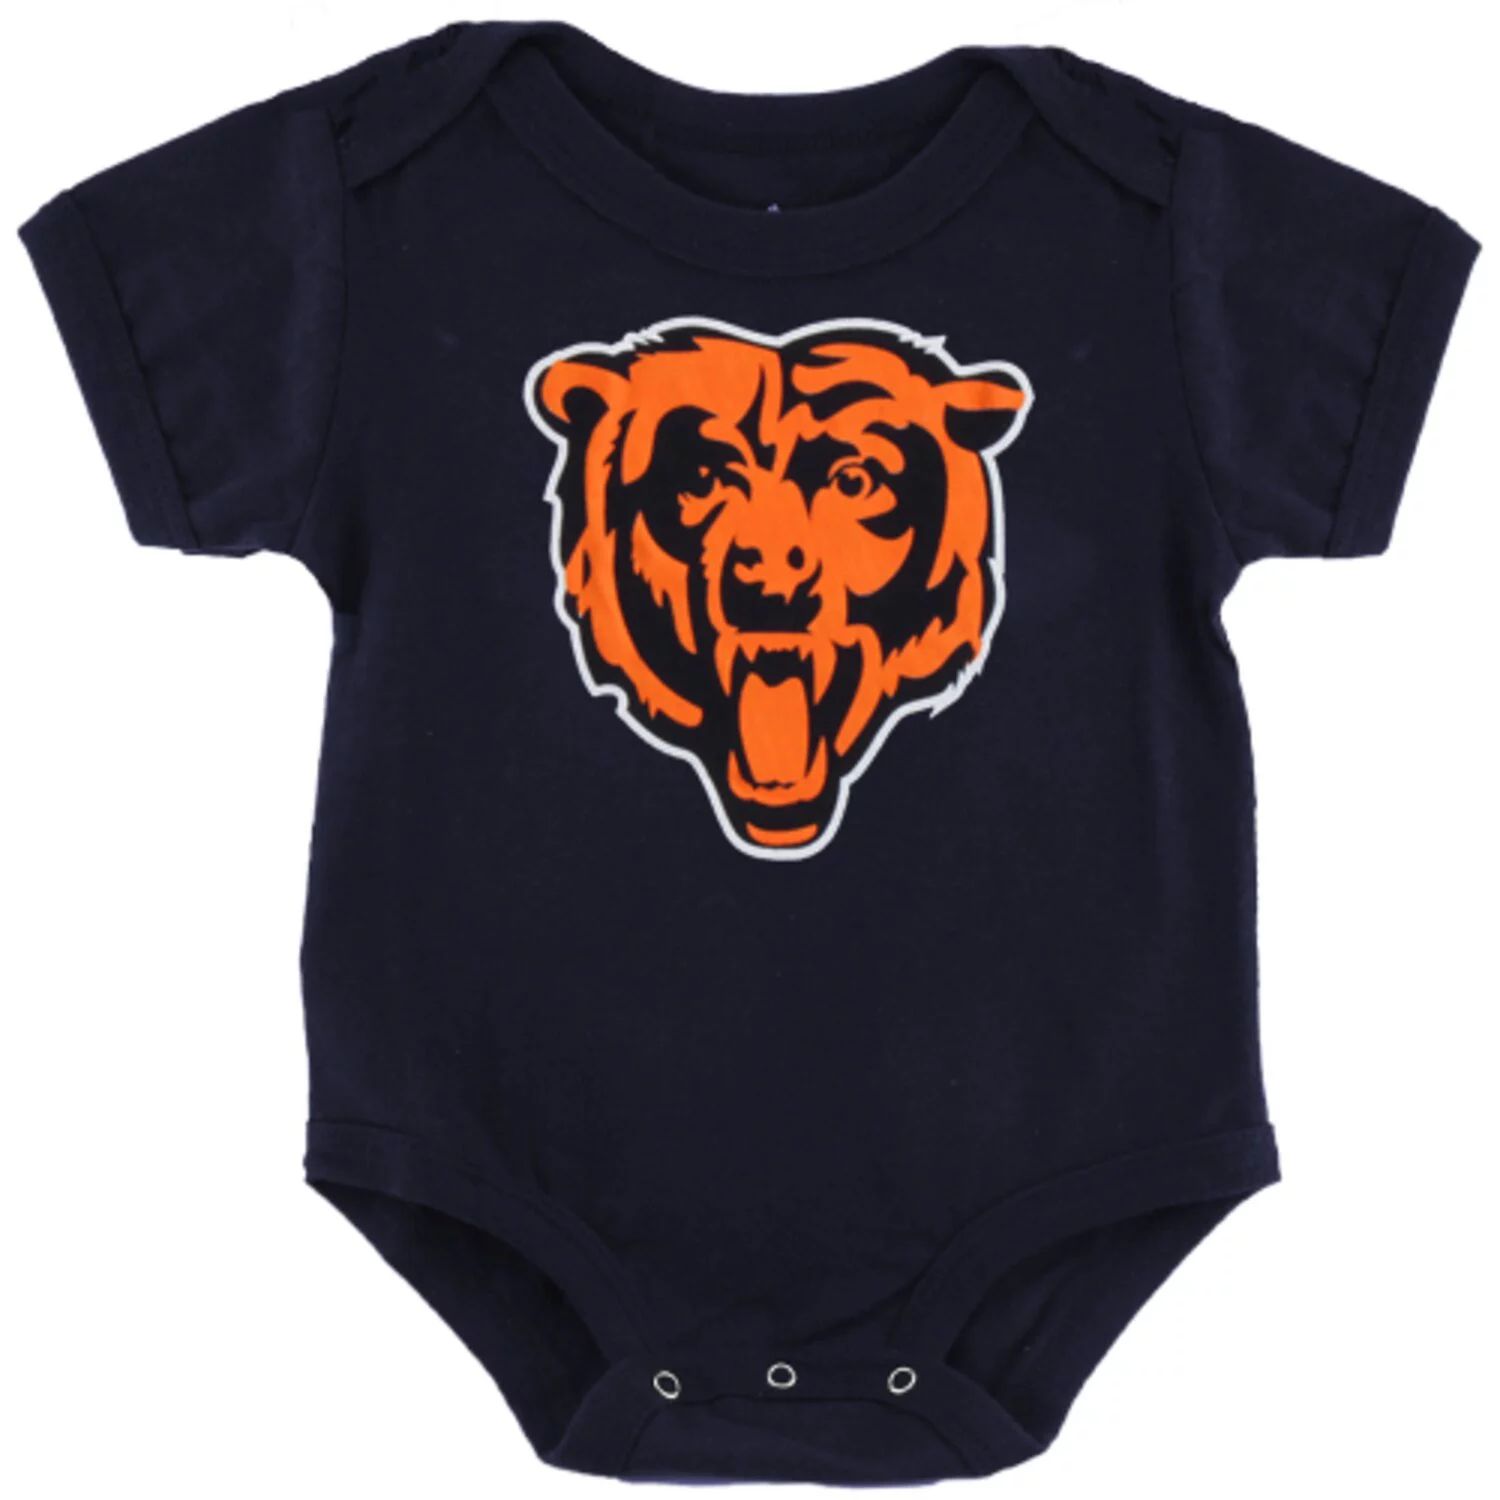 Темно-синее боди с логотипом команды Chicago Bears для новорожденных Outerstuff